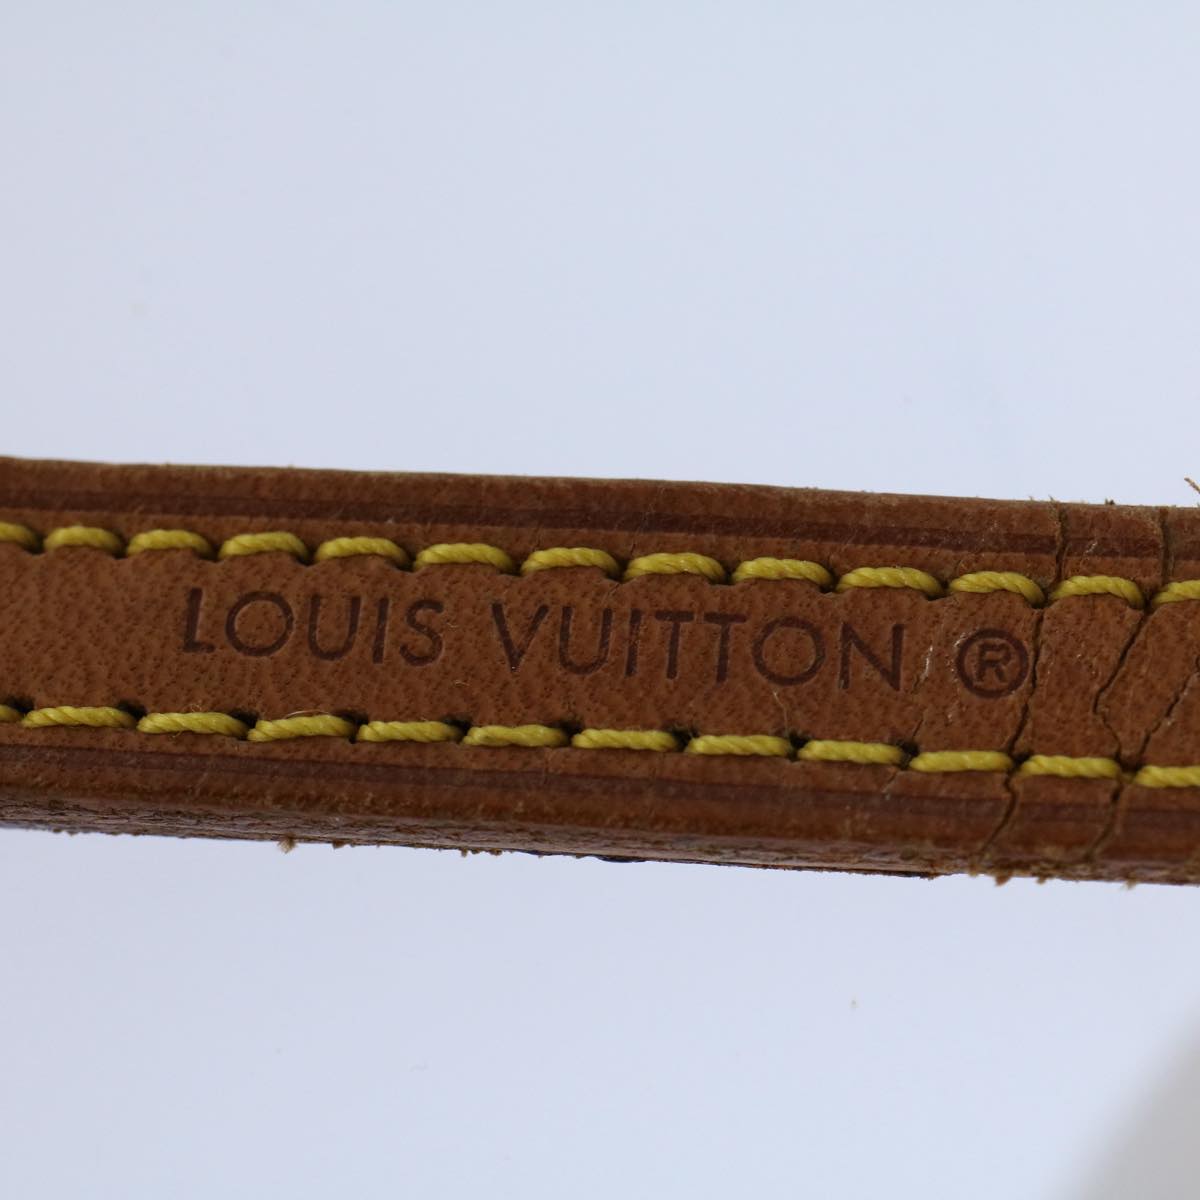 LOUIS VUITTON Shoulder Strap Leather 44.5"" Beige LV Auth 59784